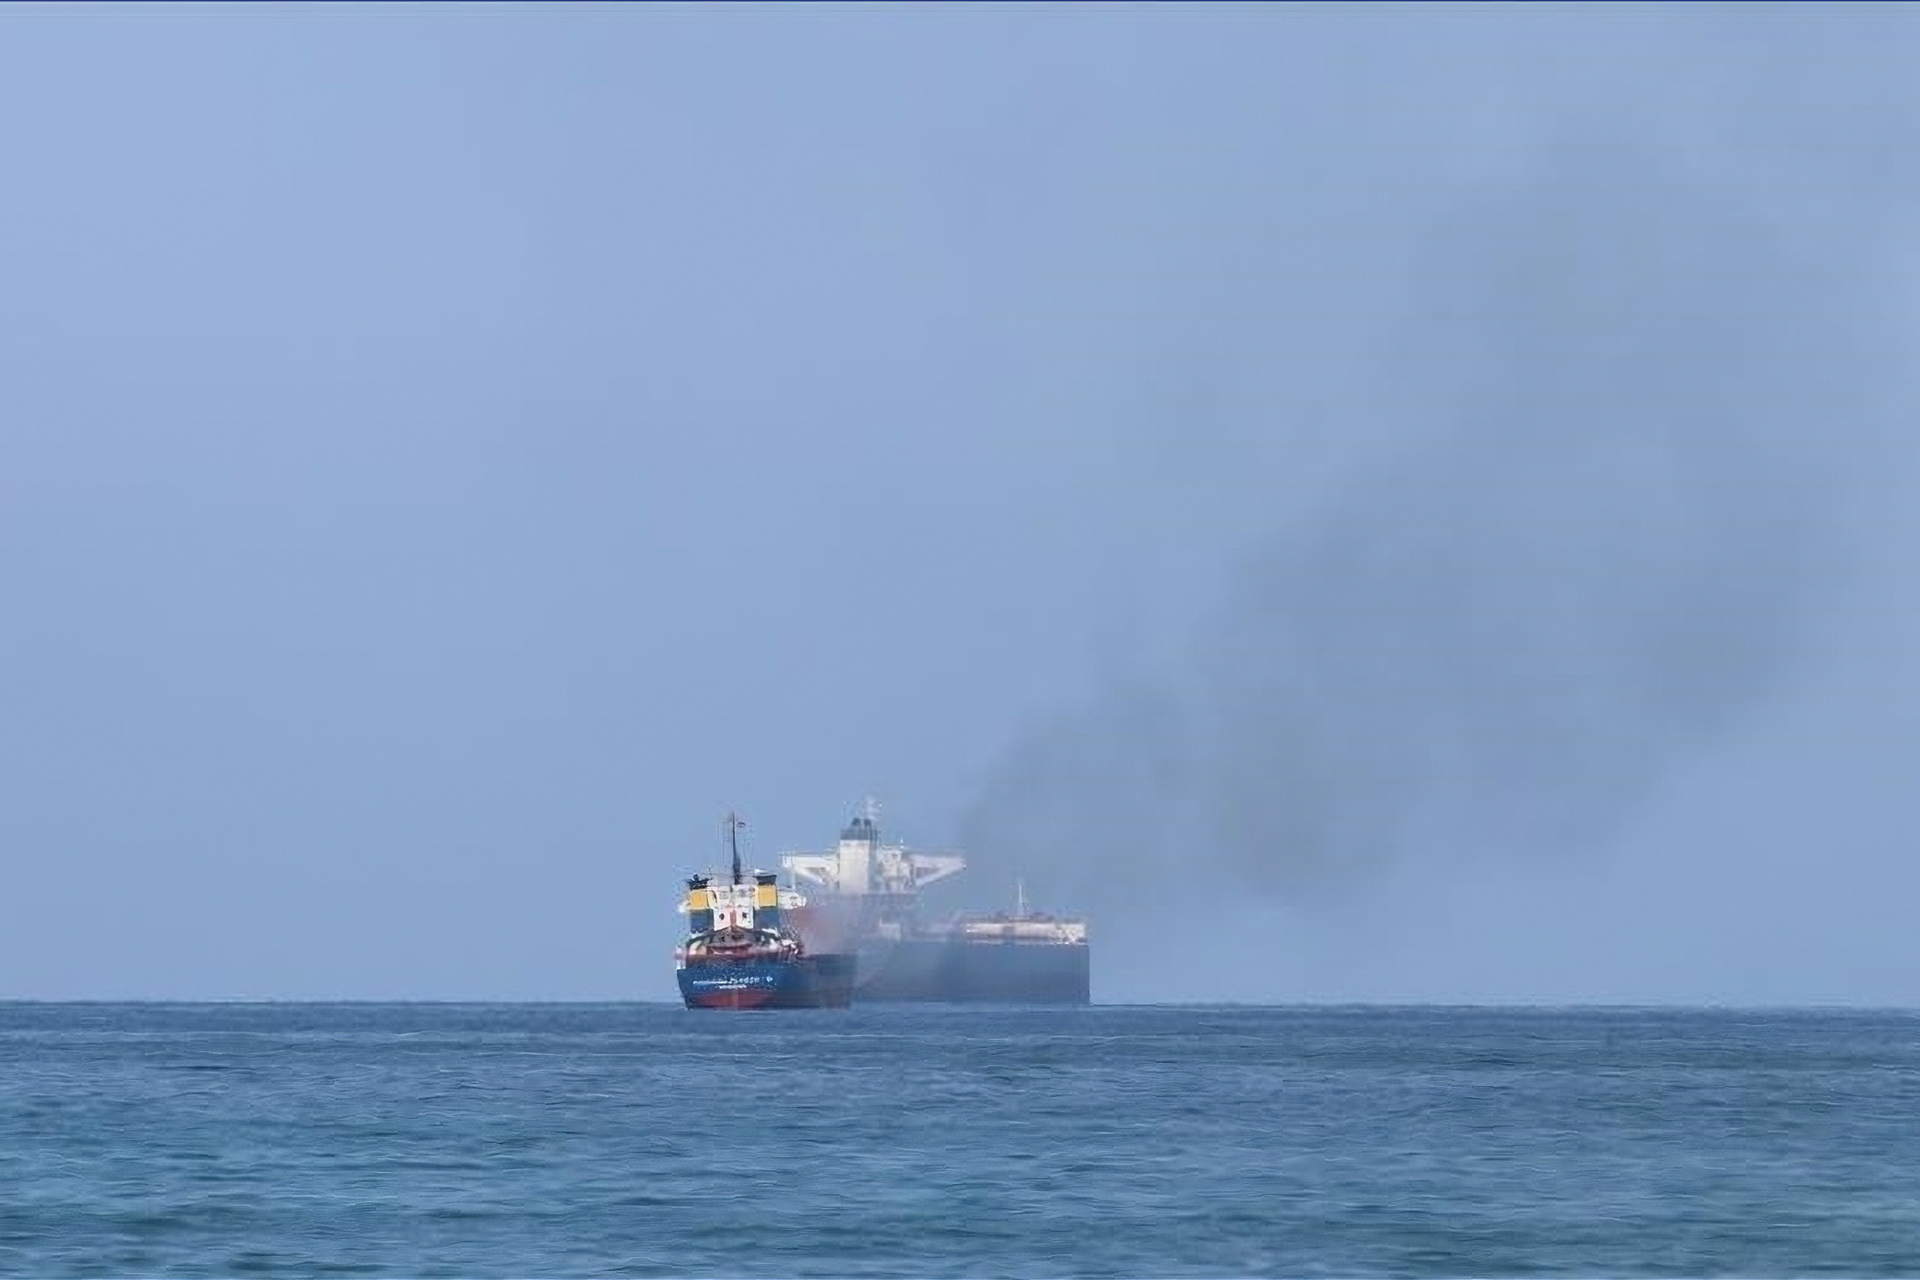 سفينة تجارية تتعرض لهجوم قبالة صلالة بسلطنة عمان | أخبار – البوكس نيوز